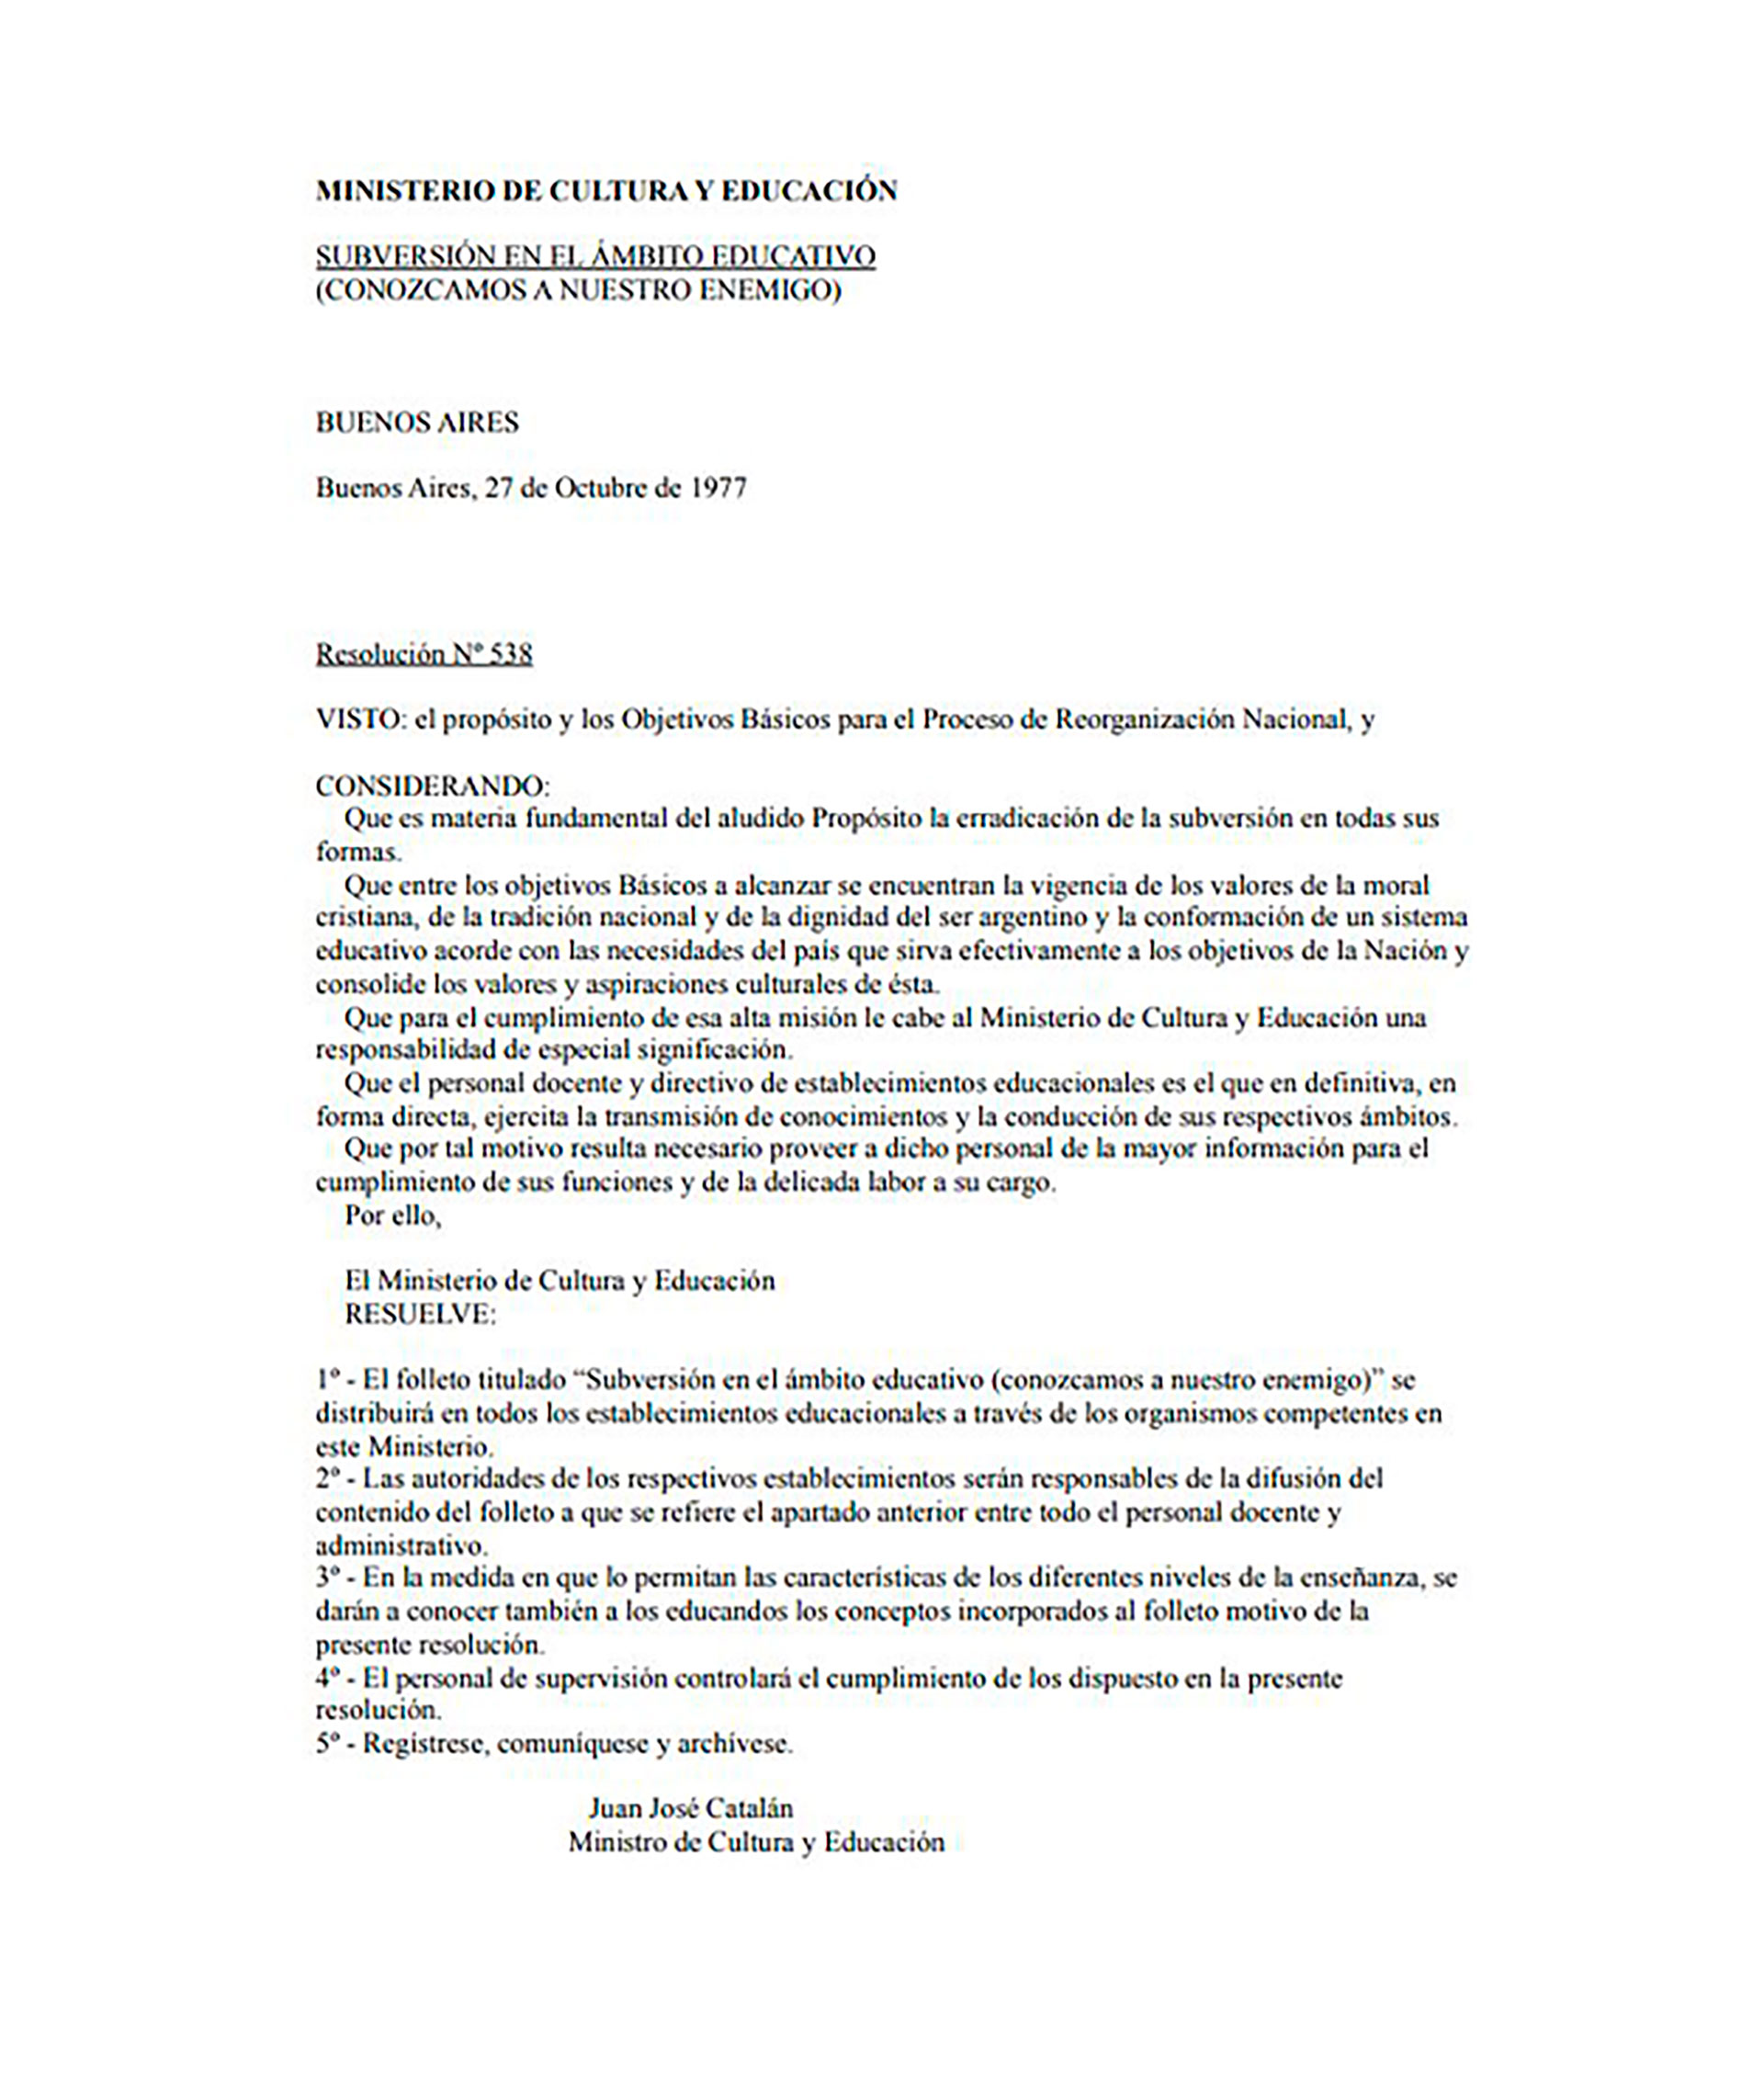 El manual antisubversivo fue una obra del ministro de Educación del gobierno de facto, Juan José Catalán